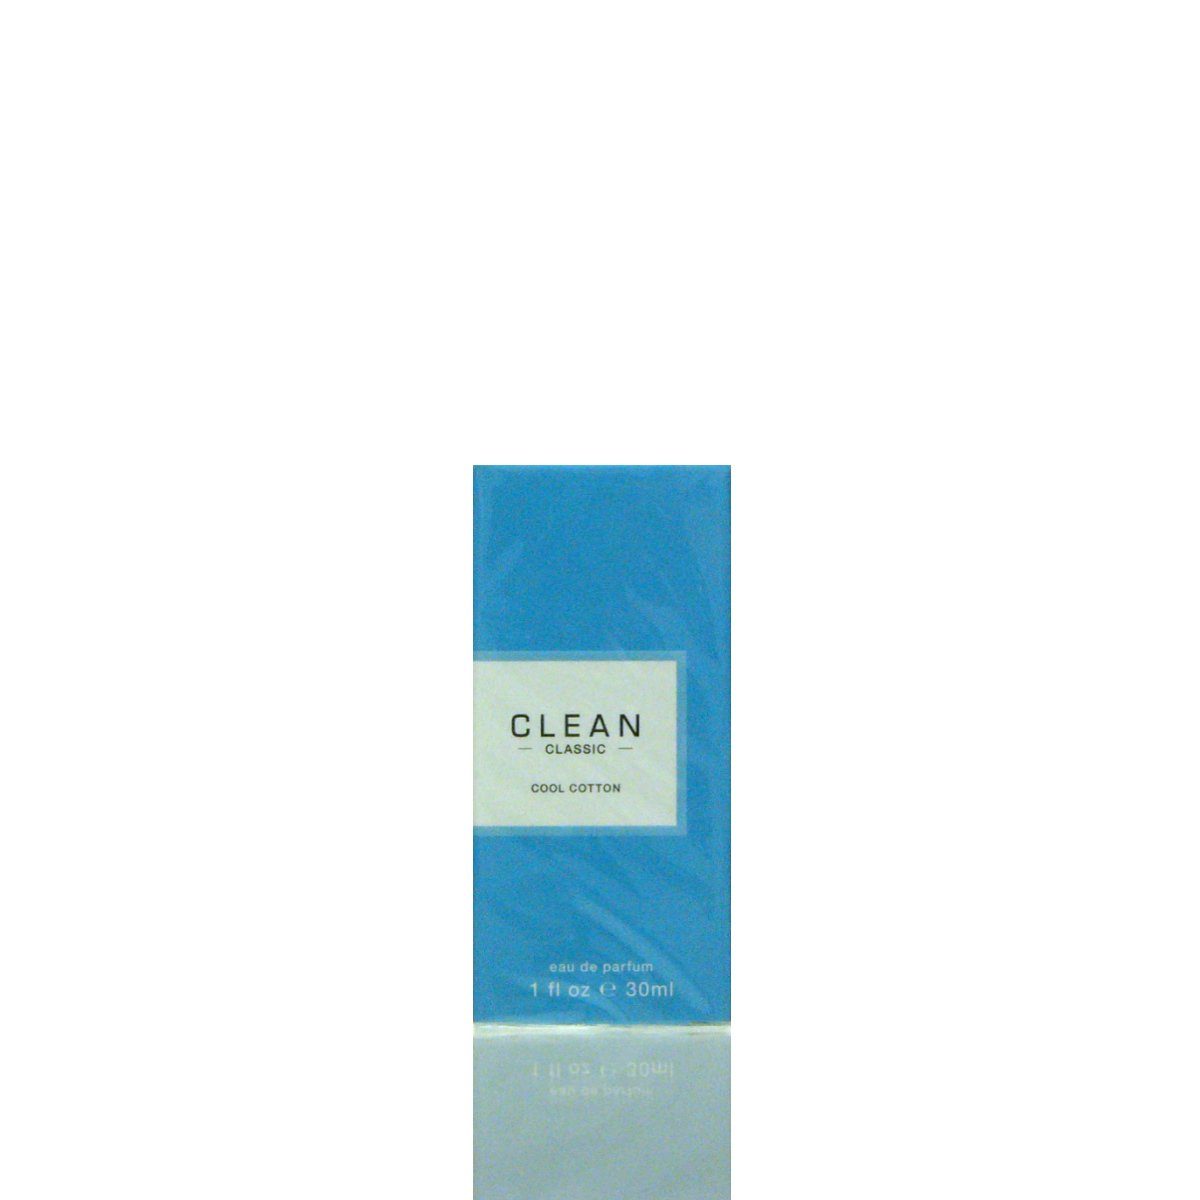 Clean Eau de Parfum CLEAN Cool Cotton 2020 Eau de Parfum 30 ml